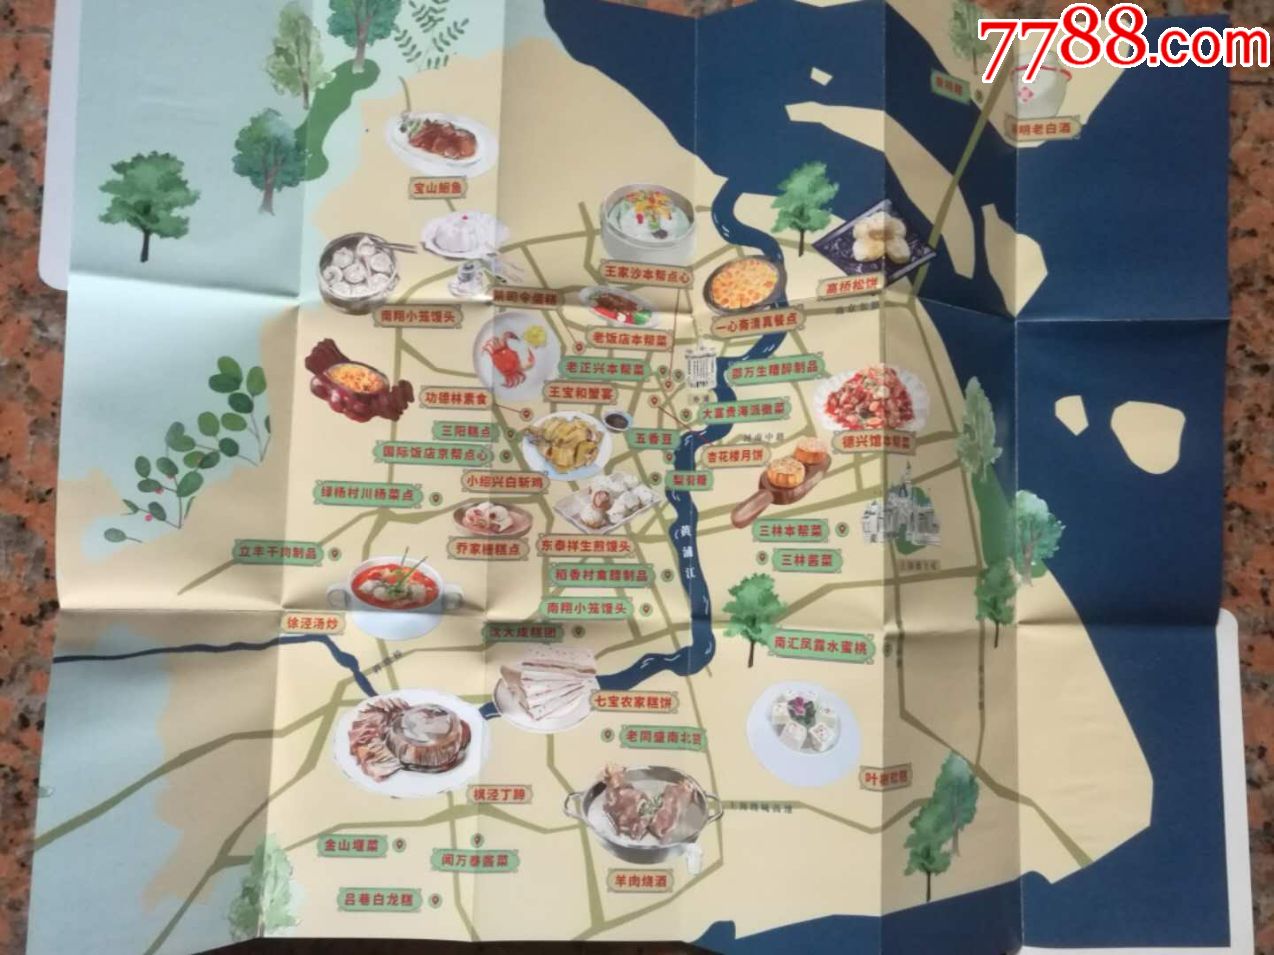 6上海非遗美食地图(口袋图)